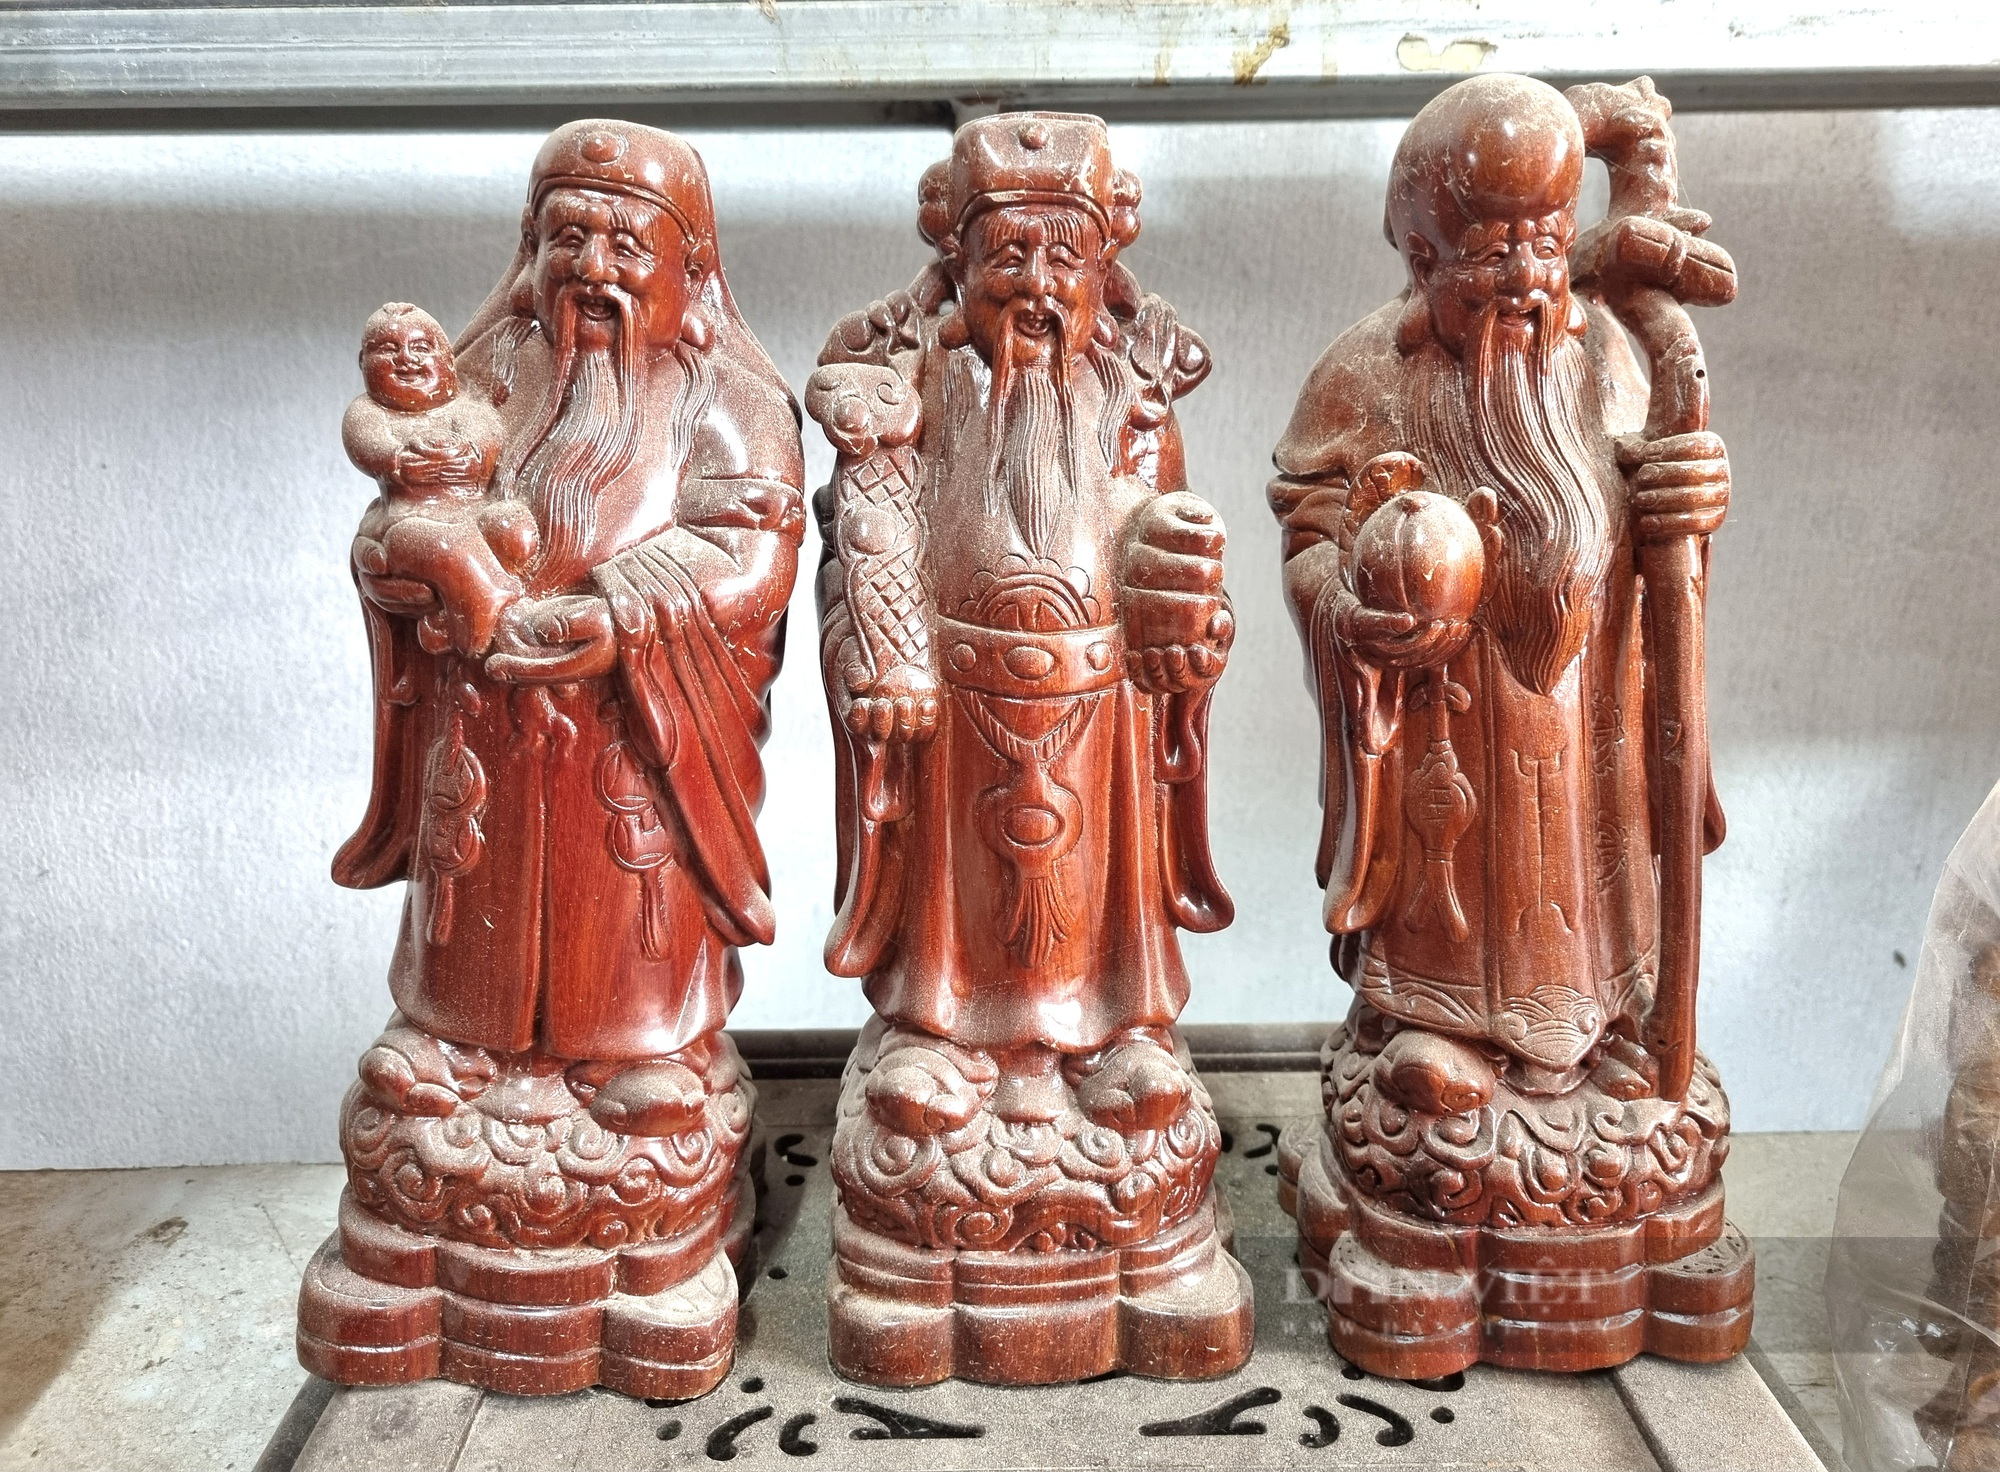 9X Ninh Bình nổi tiếng với nghề điêu khắc gỗ - Ảnh 3.